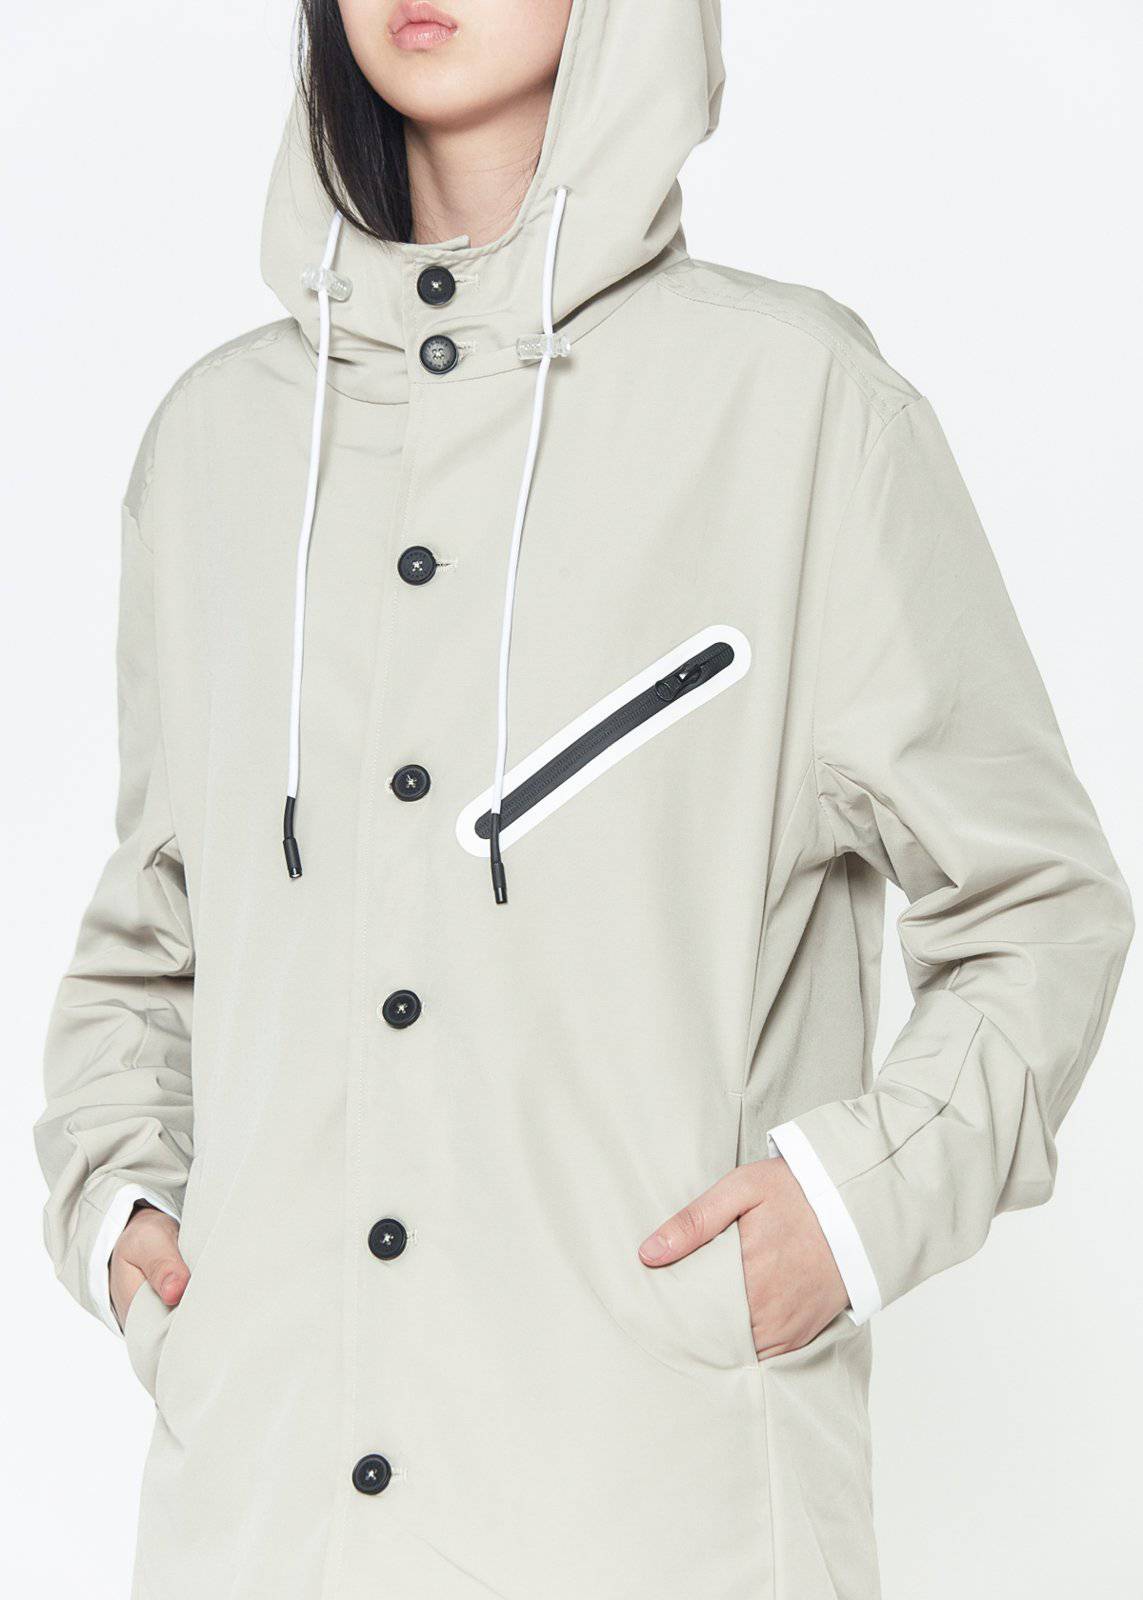 Konus Men's Hooded Jacket in Water Repellent Fabric in Ivory by Shop at Konus